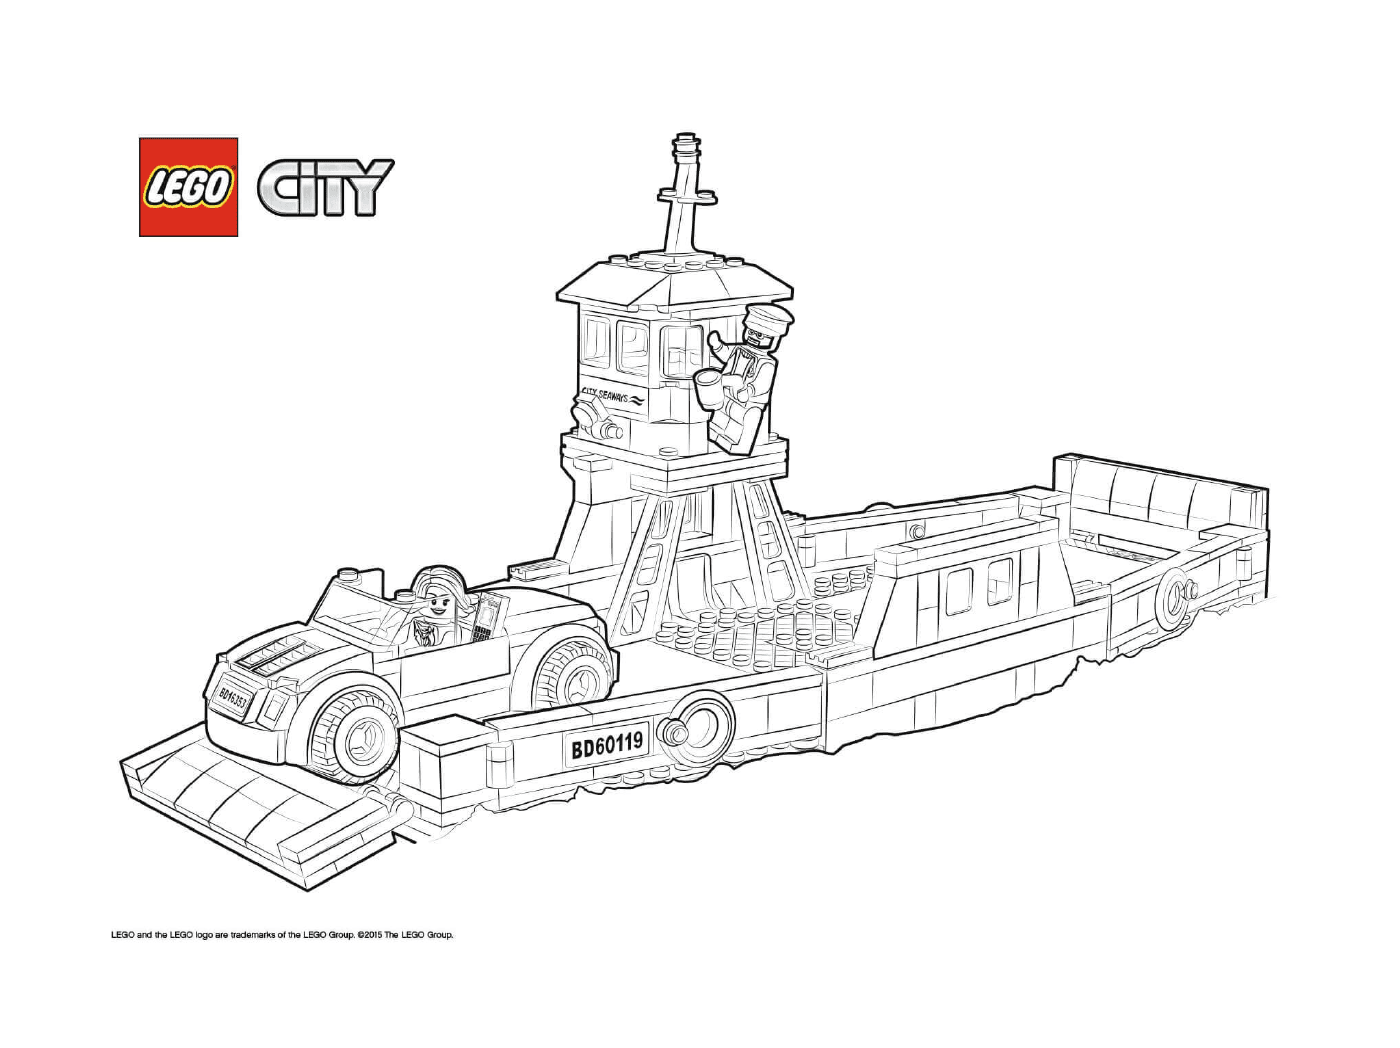  Ferry de transporte de barco Lego City 